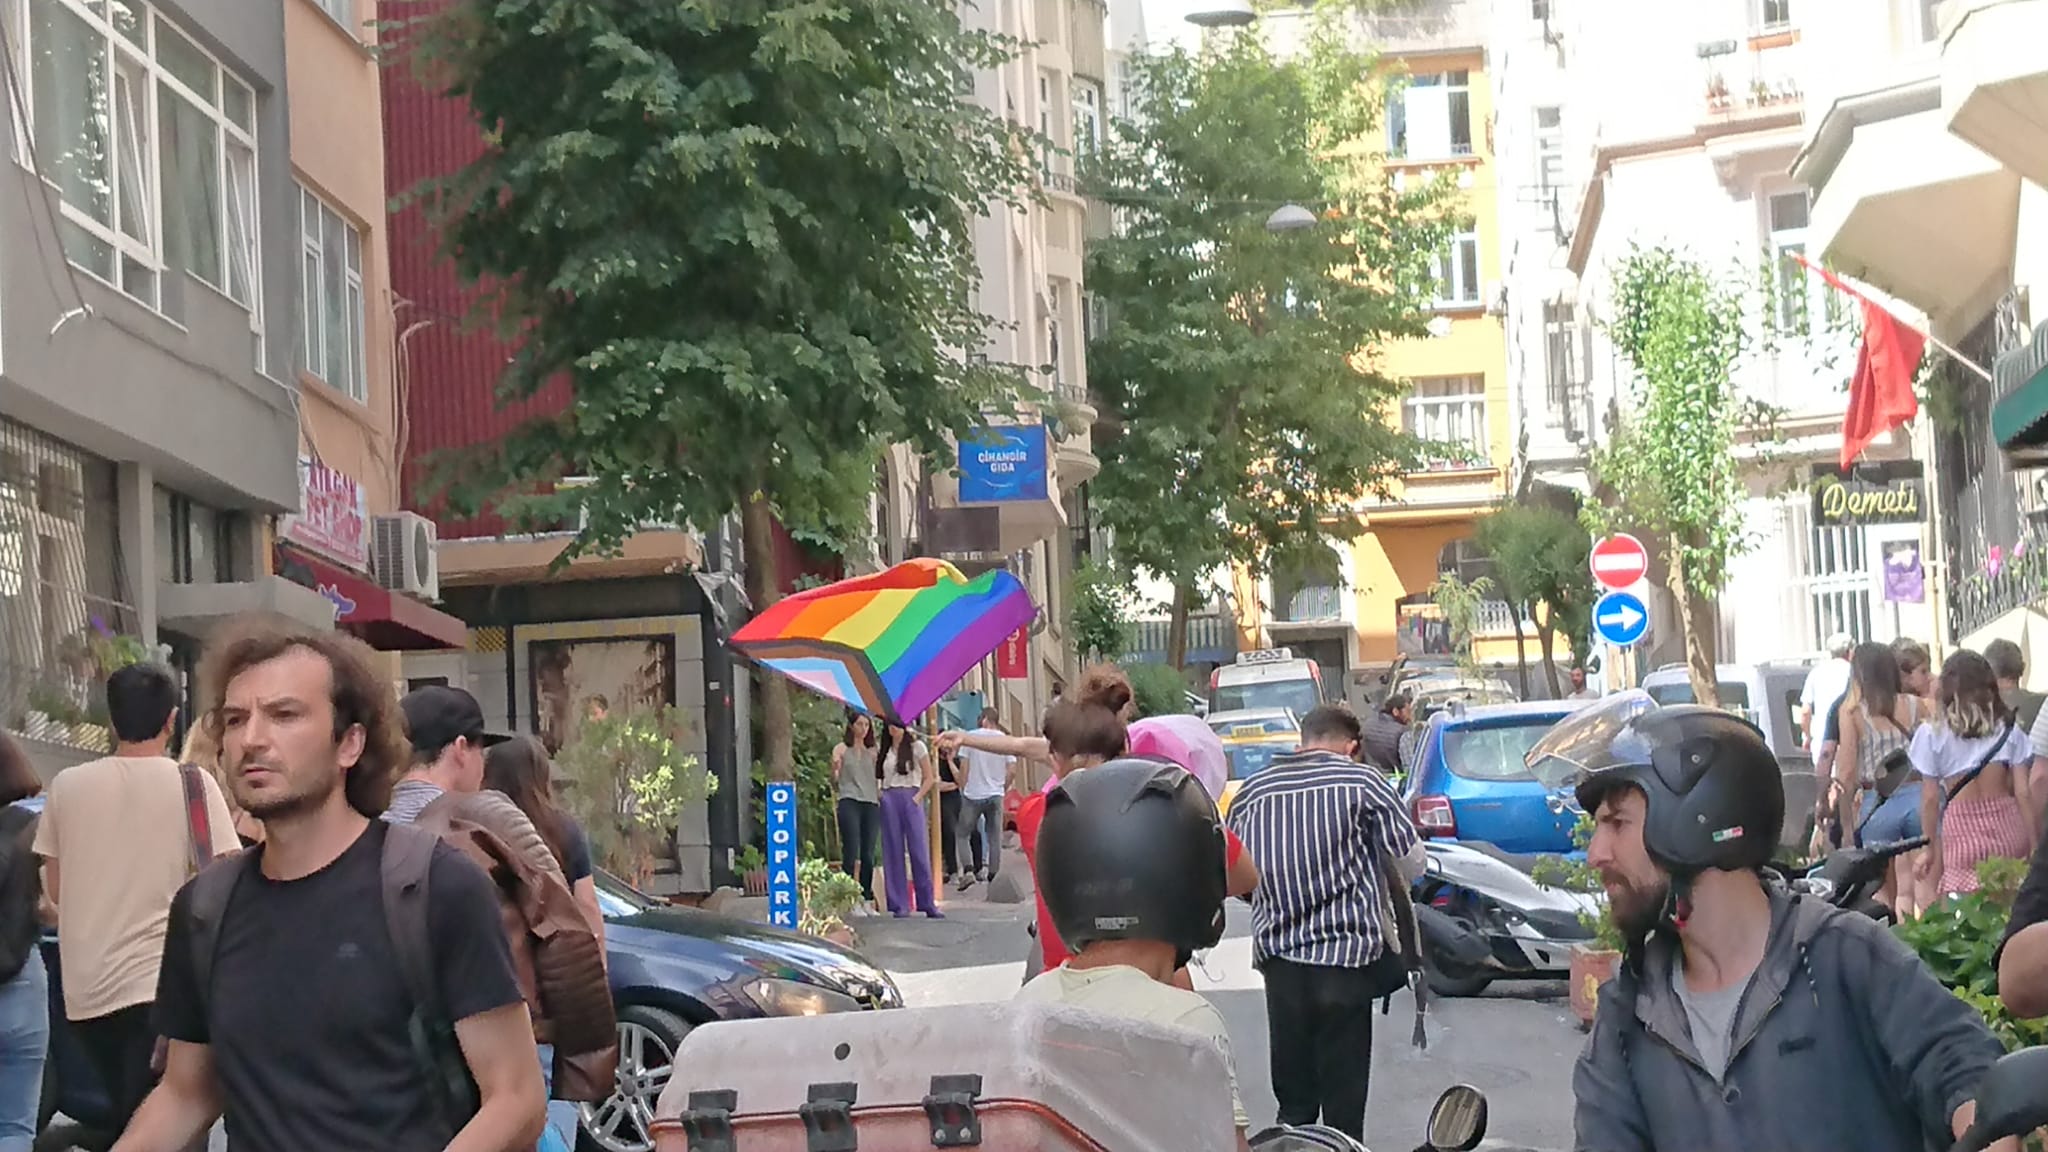 İstanbul Onur Yürüyüşü: Polis, kafelerde oturan LGBTİ+'lara ve basına saldırdı | Kaos GL - LGBTİ+ Haber Portalı Haber